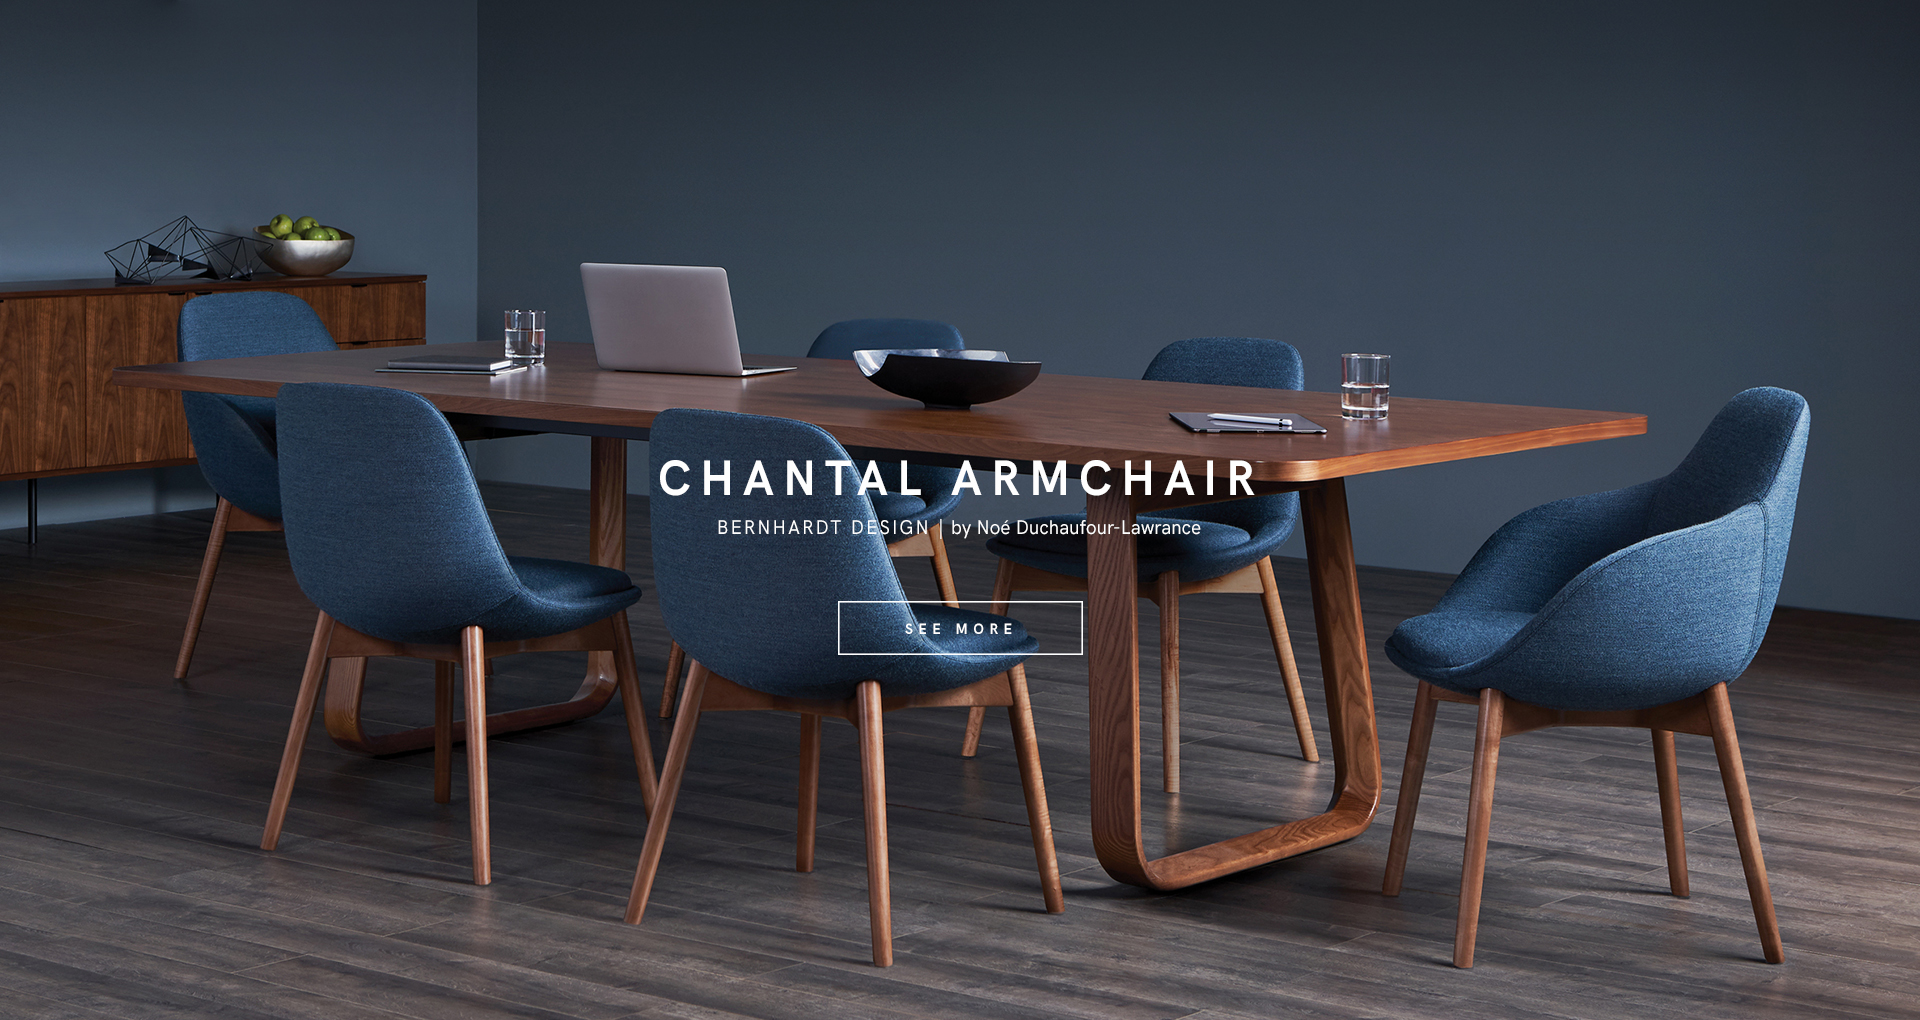 kezu bernhardt design chantal armchair designed by Noé Duchaufour-Lawrance